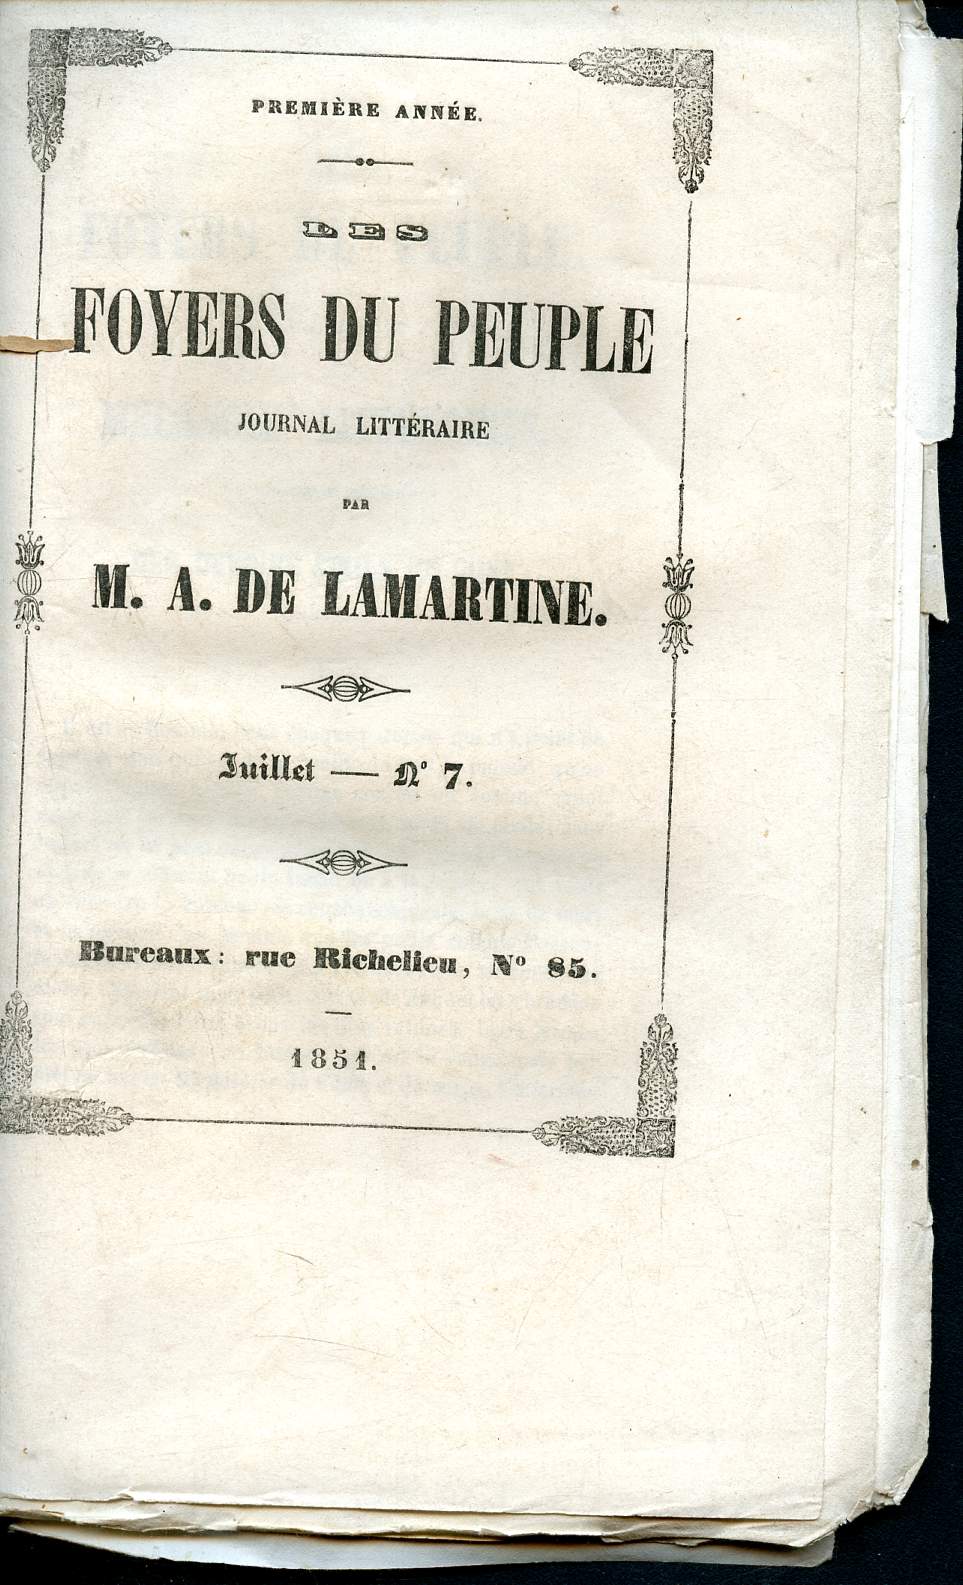 Les foyers du peuple - journal littraire -N7 - juillet 1851- premire anne - M. A. de Lamartine